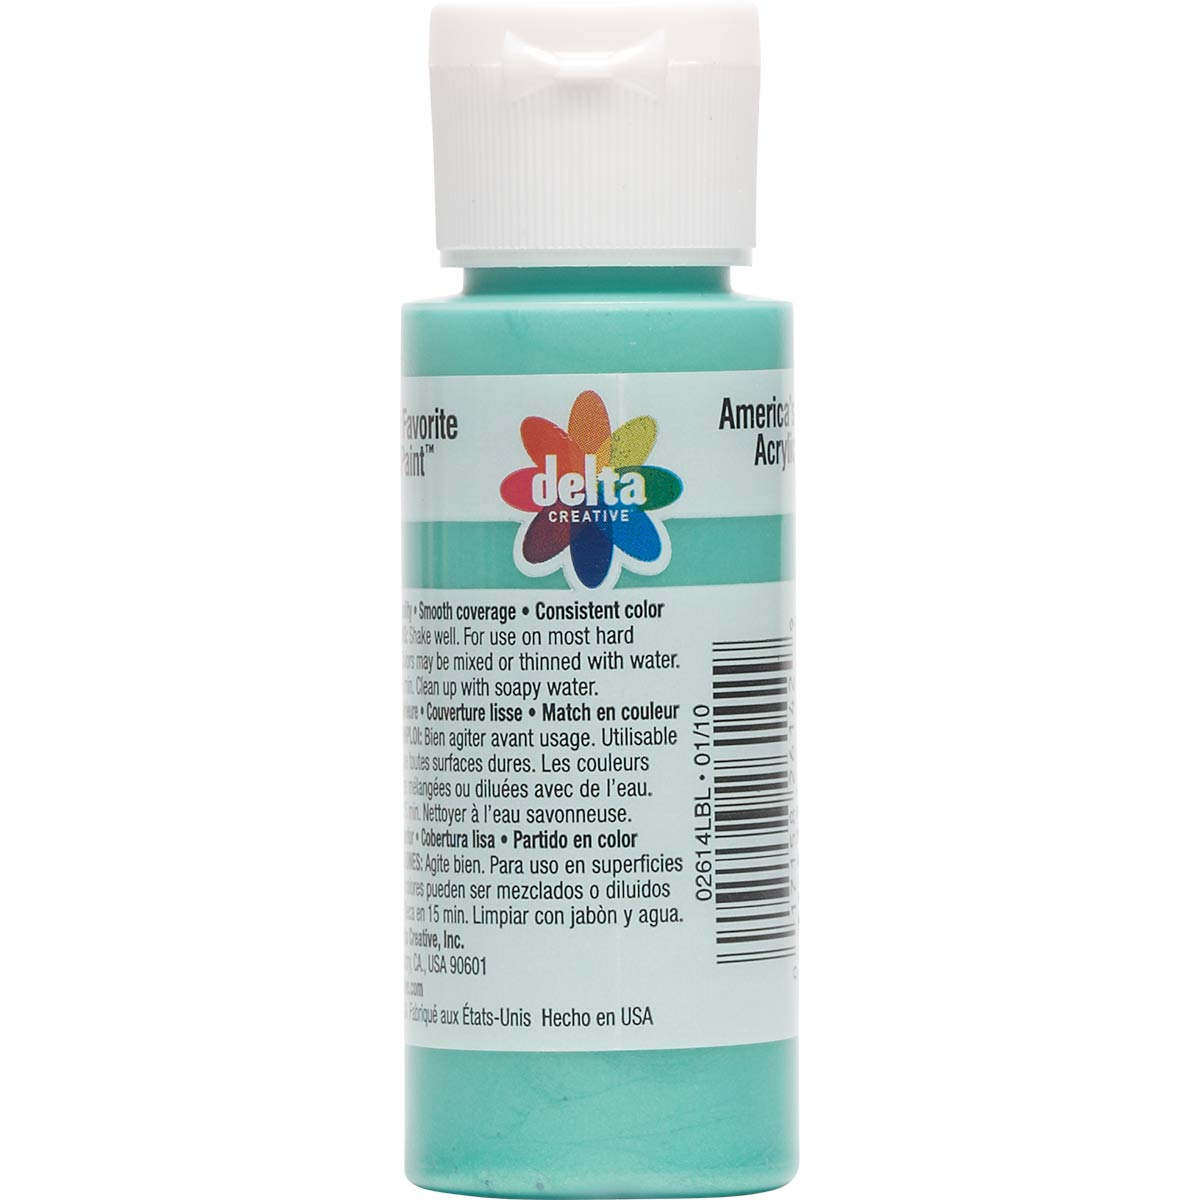 Delta Ceramcoat ® Acrylic Paint - Aqua Cool Pearl, 2 oz. - 026140202W